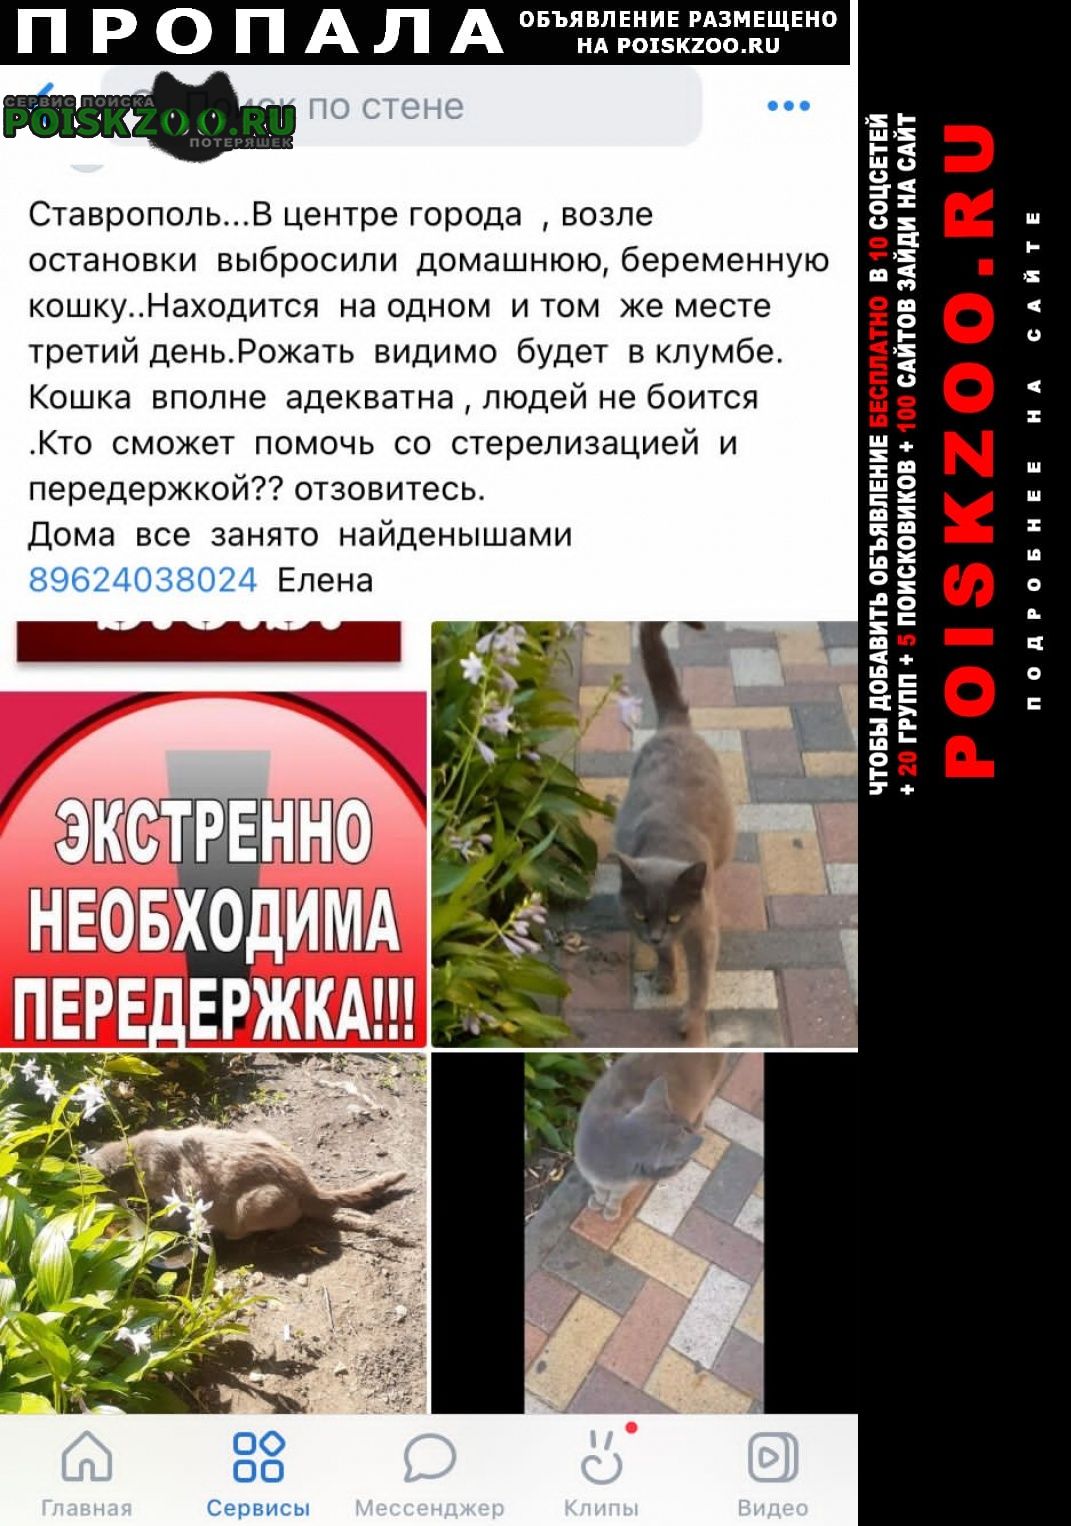 Пропала кошка с красным ошейником Ставрополь